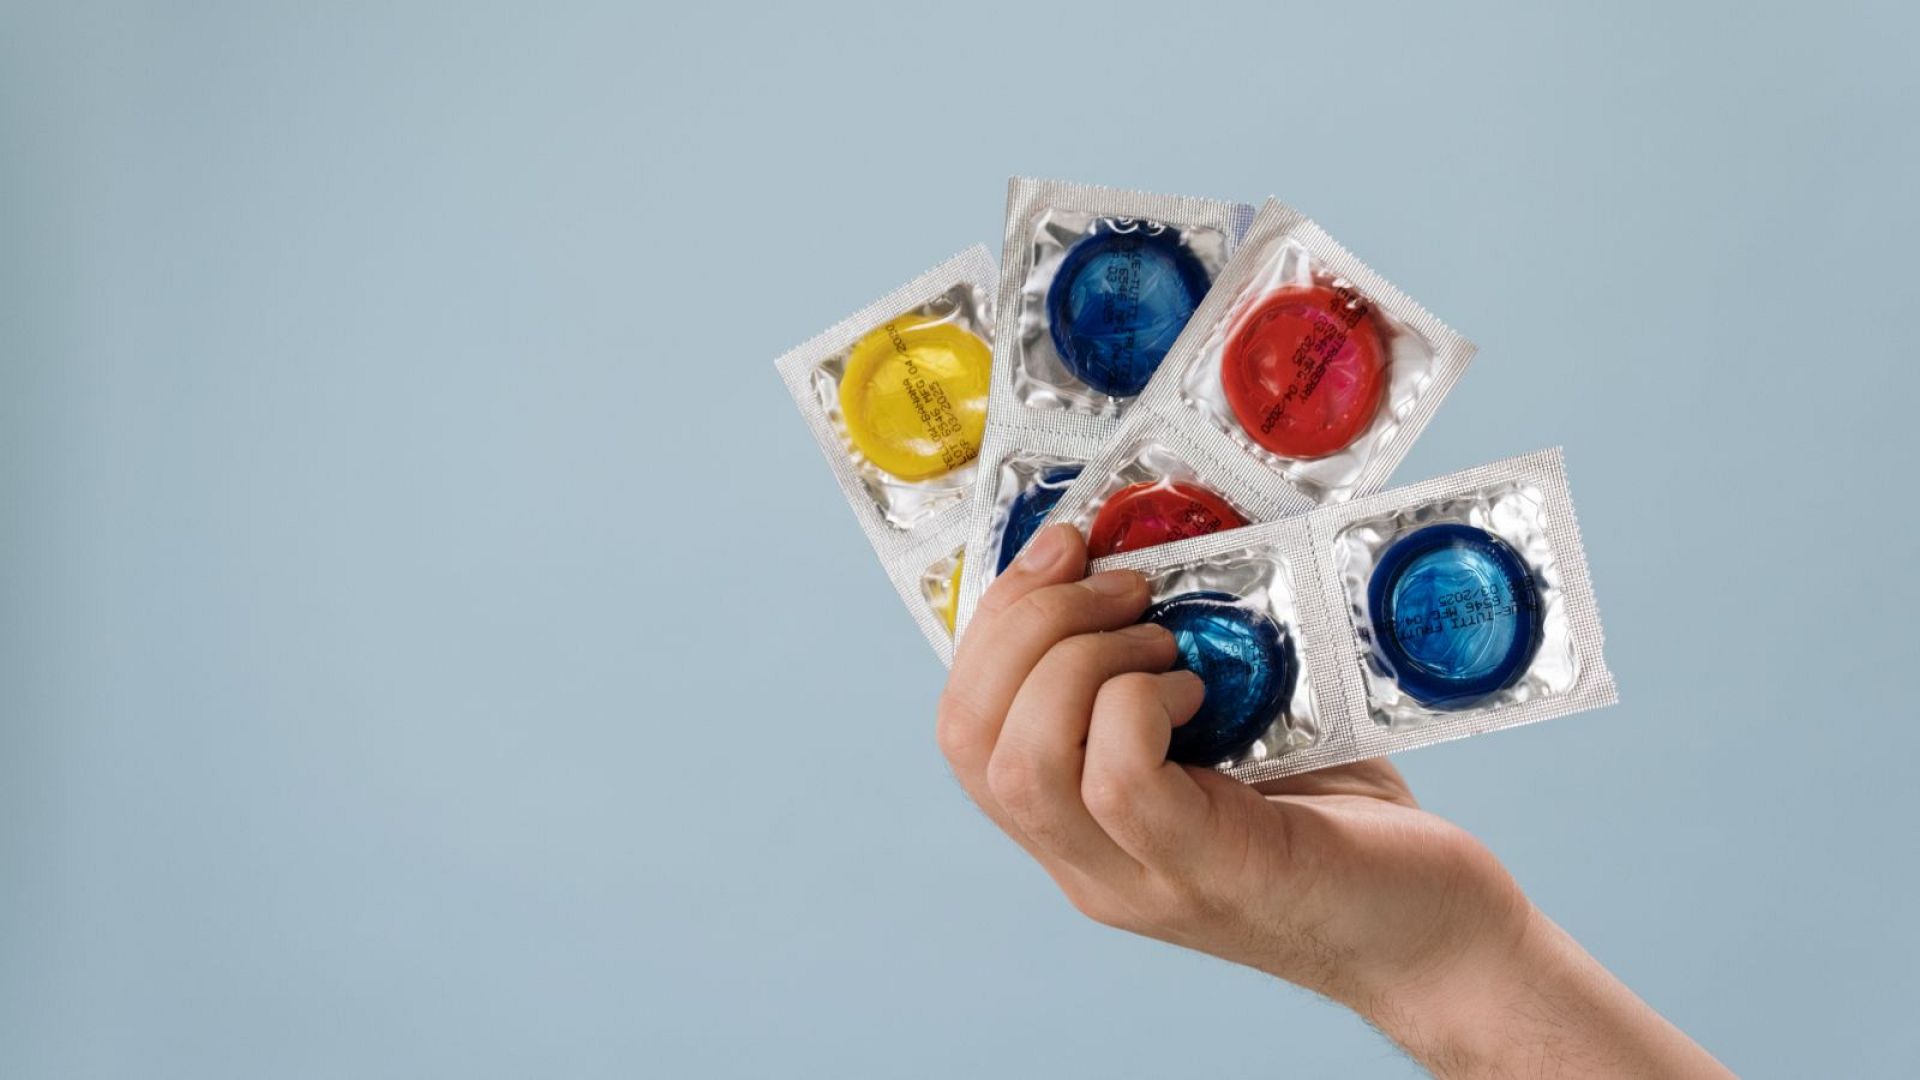 İspanya cinsel yolla bulaşan enfeksiyonlardaki artış nedeniyle gençlere ücretsiz prezervatif dağıtacak